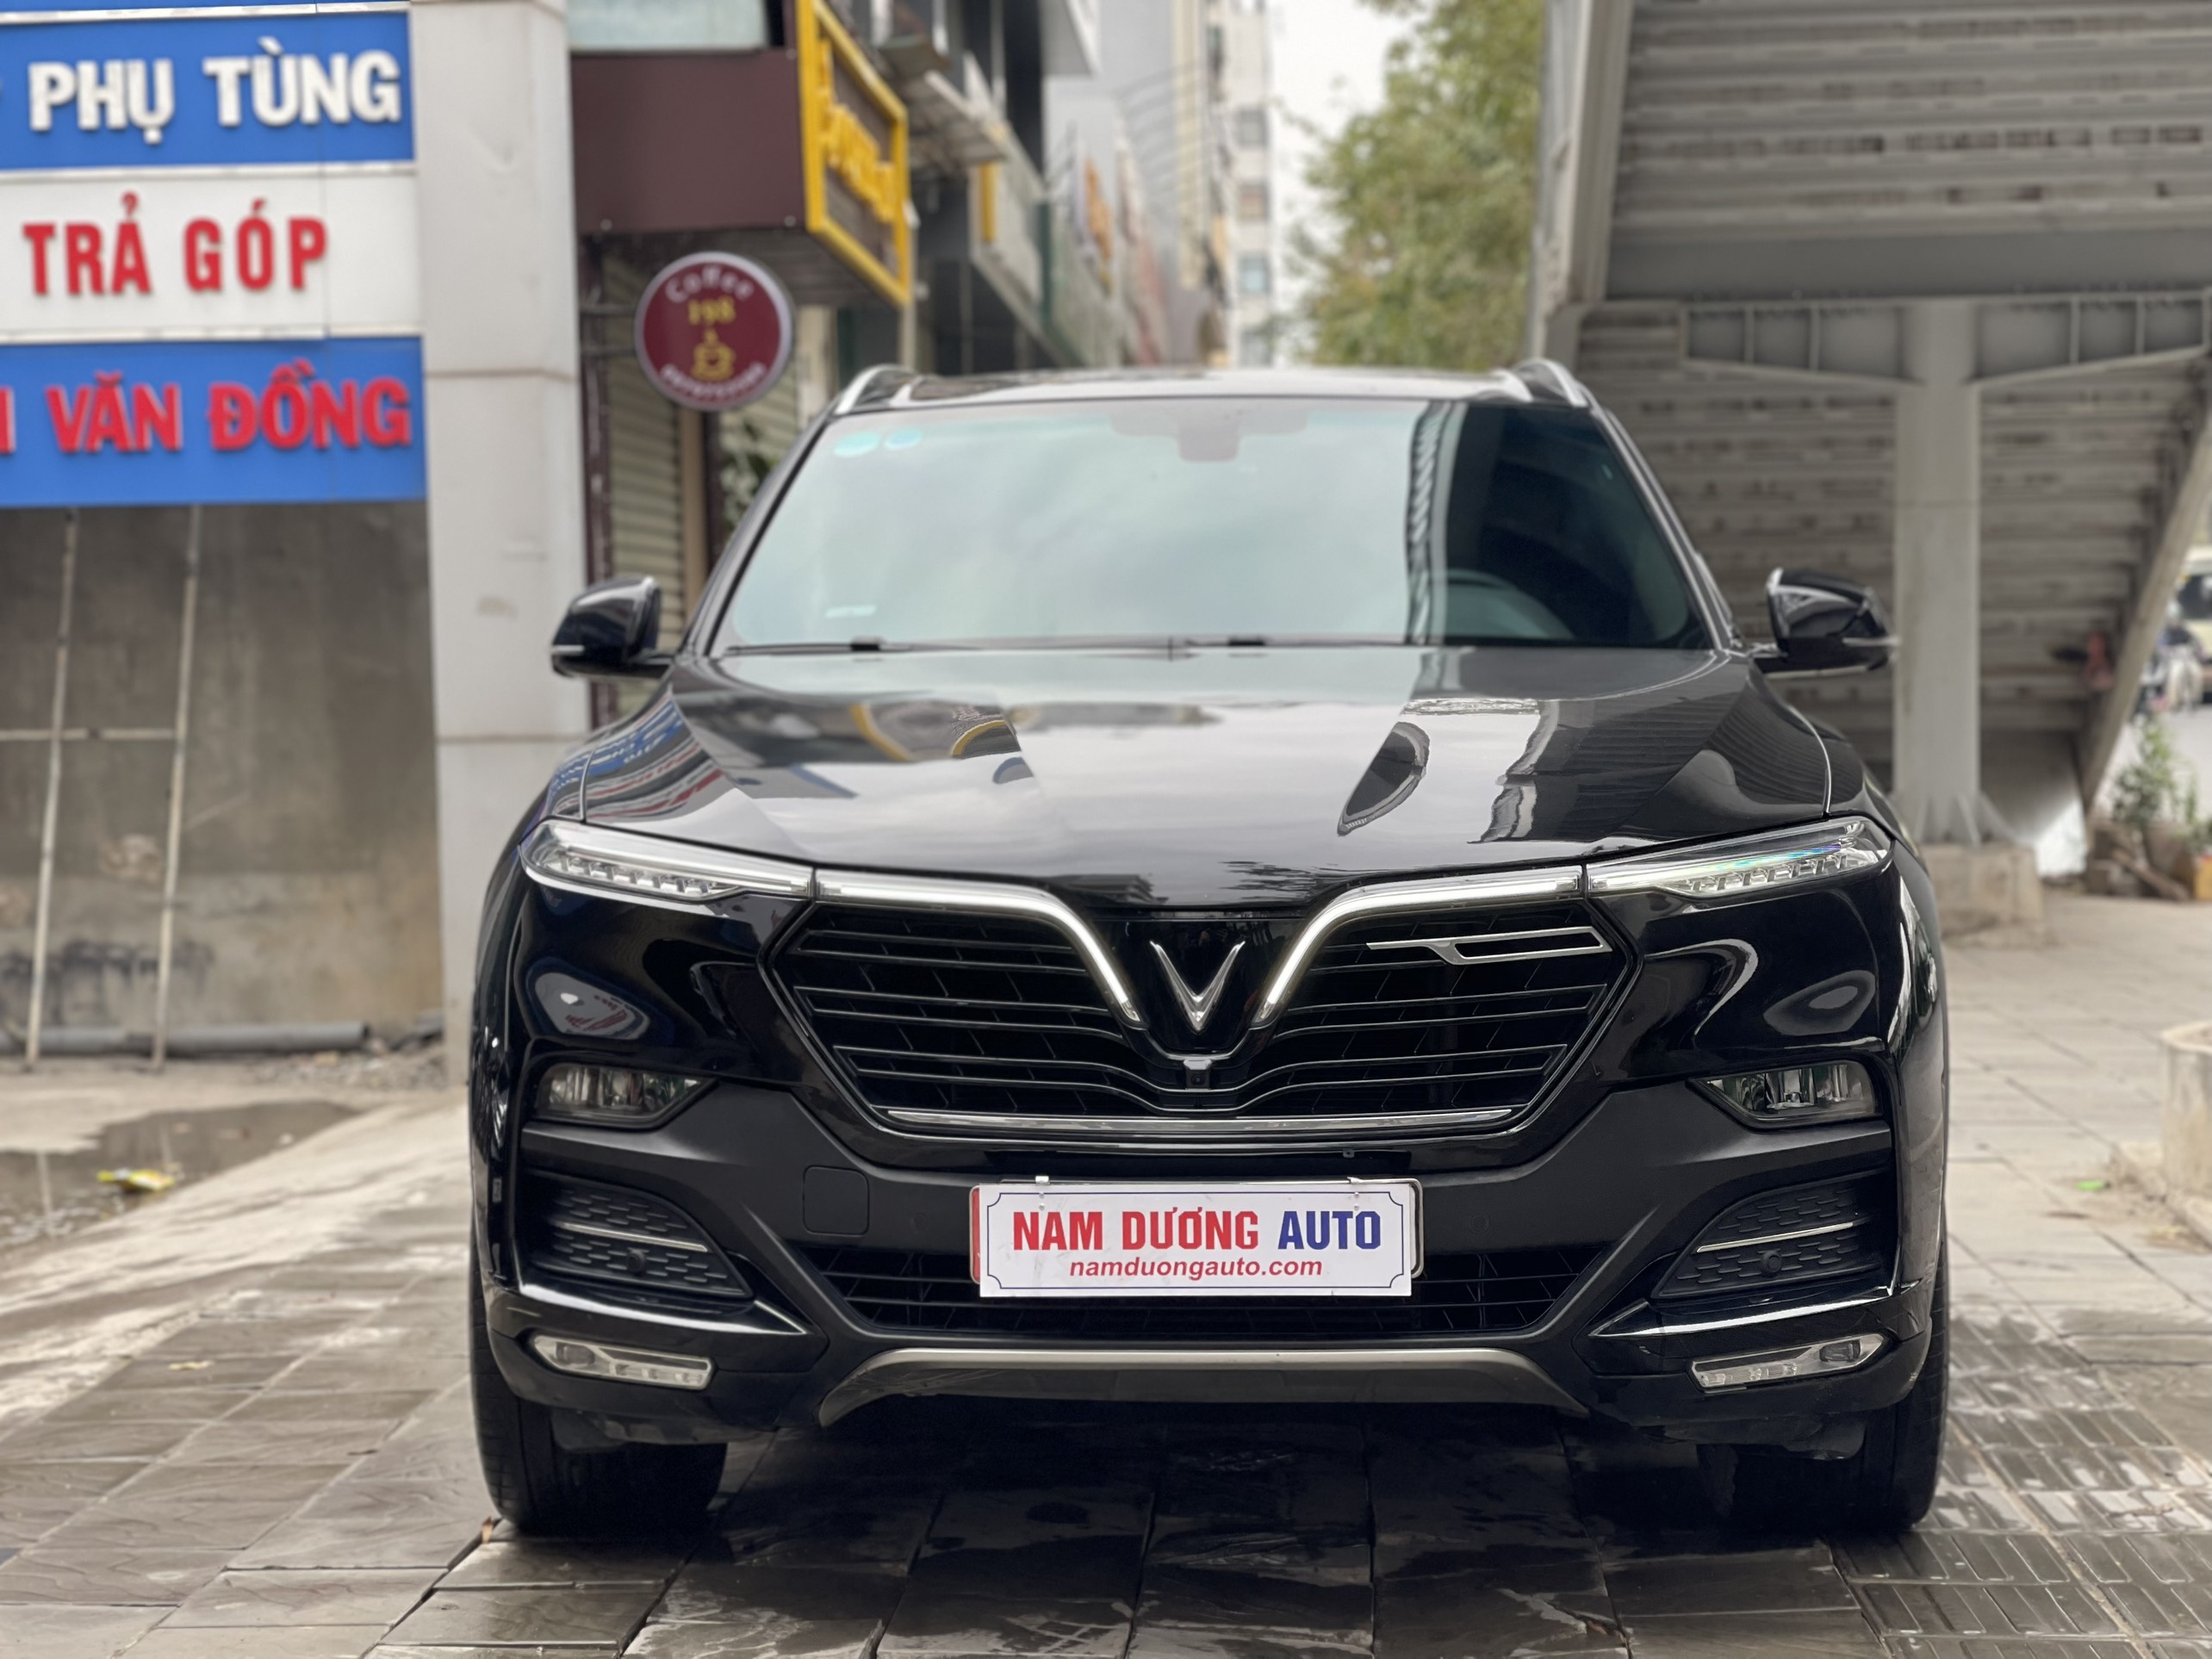 CEO Nam Dương Auto thổ lộ chiến lược kinh doanh xe cũ có 1 không 2   All you need for Car